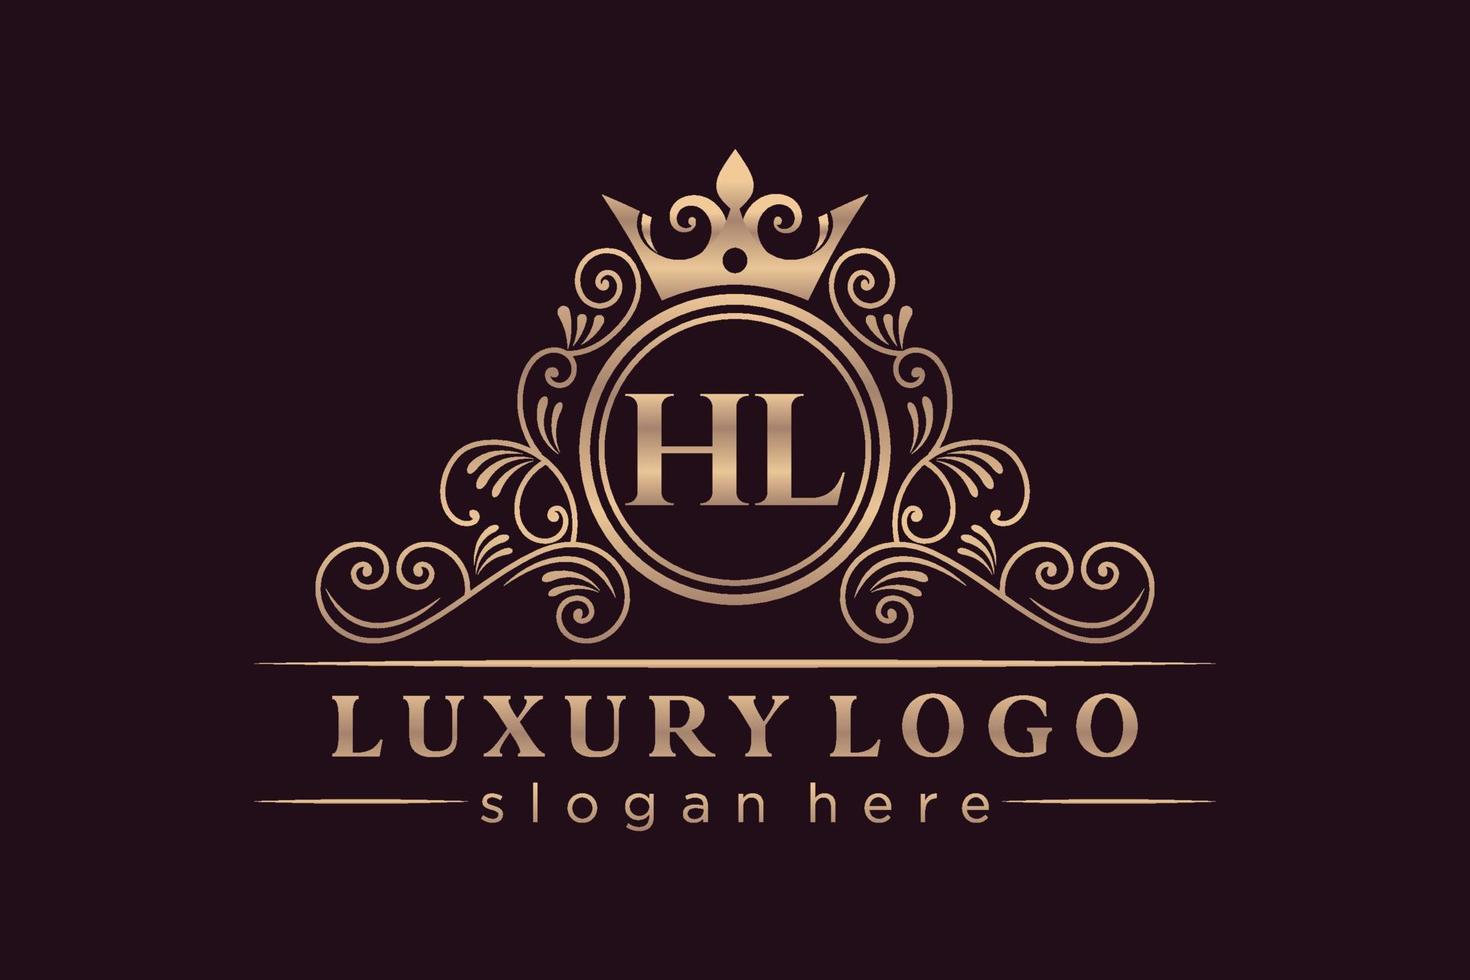 HL Initial Letter Gold calligraphic feminine floral hand drawn heraldic monogram antique vintage style luxury logo design Premium Vector